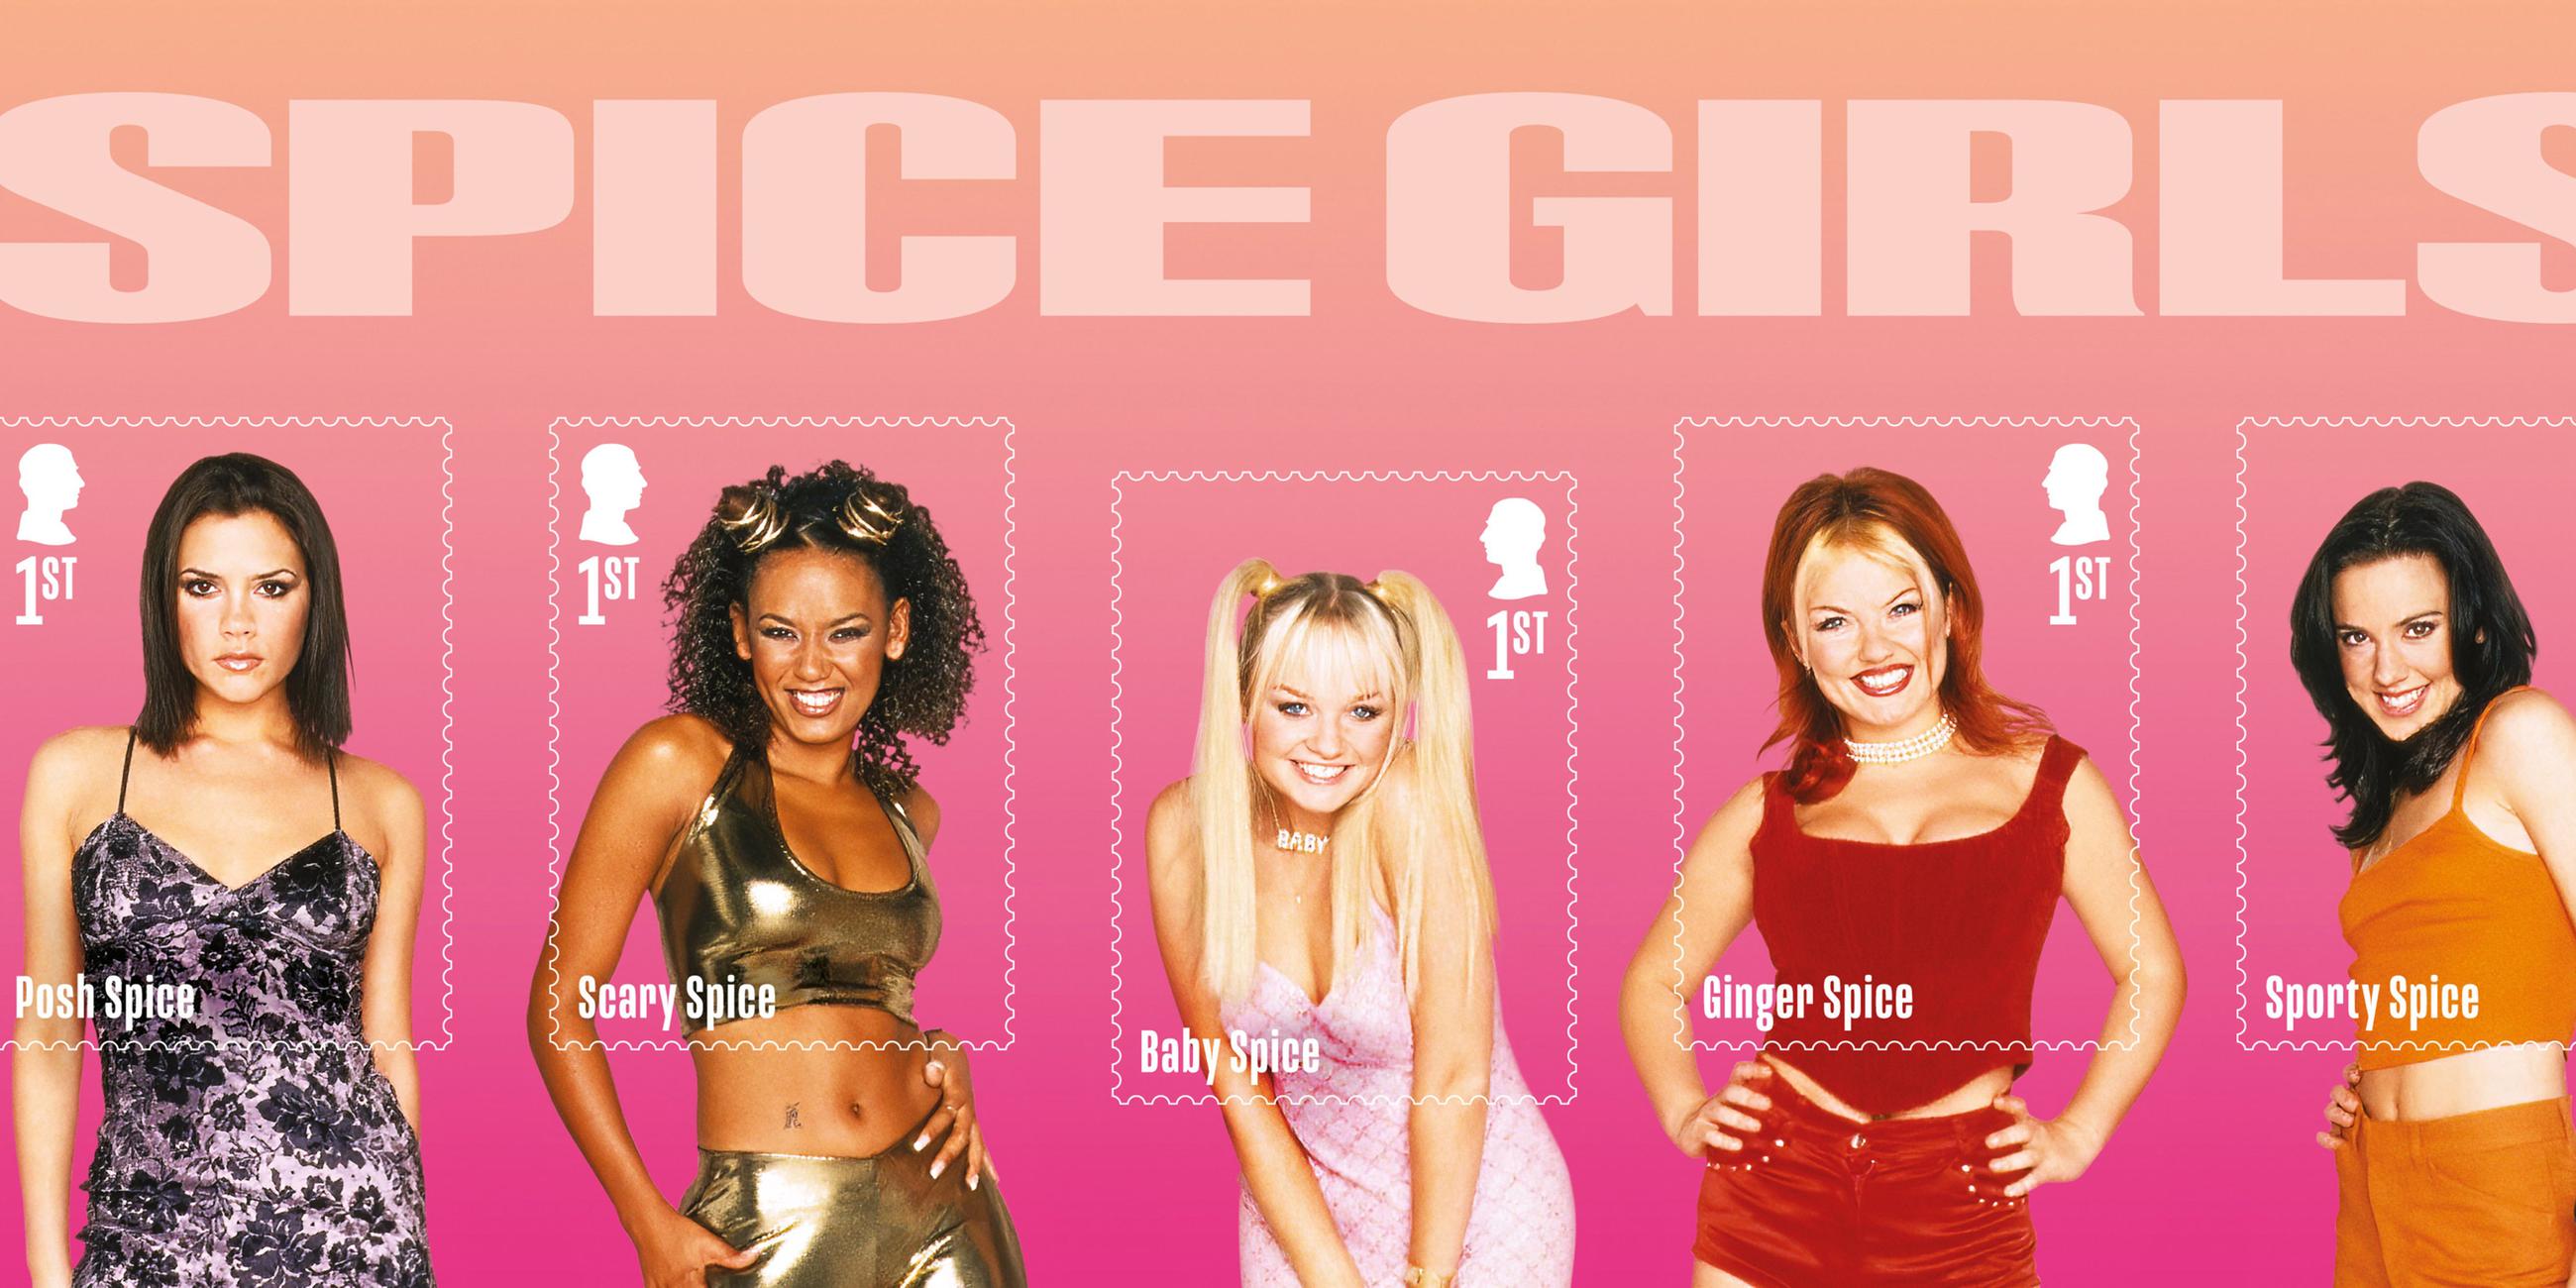 Eine der neuen Briefmarken, welche in einem Kleinbogen präsentiert werden und einzelne Bilder der Spice Girls aus dem Spice World-Fotoshooting zeigt.